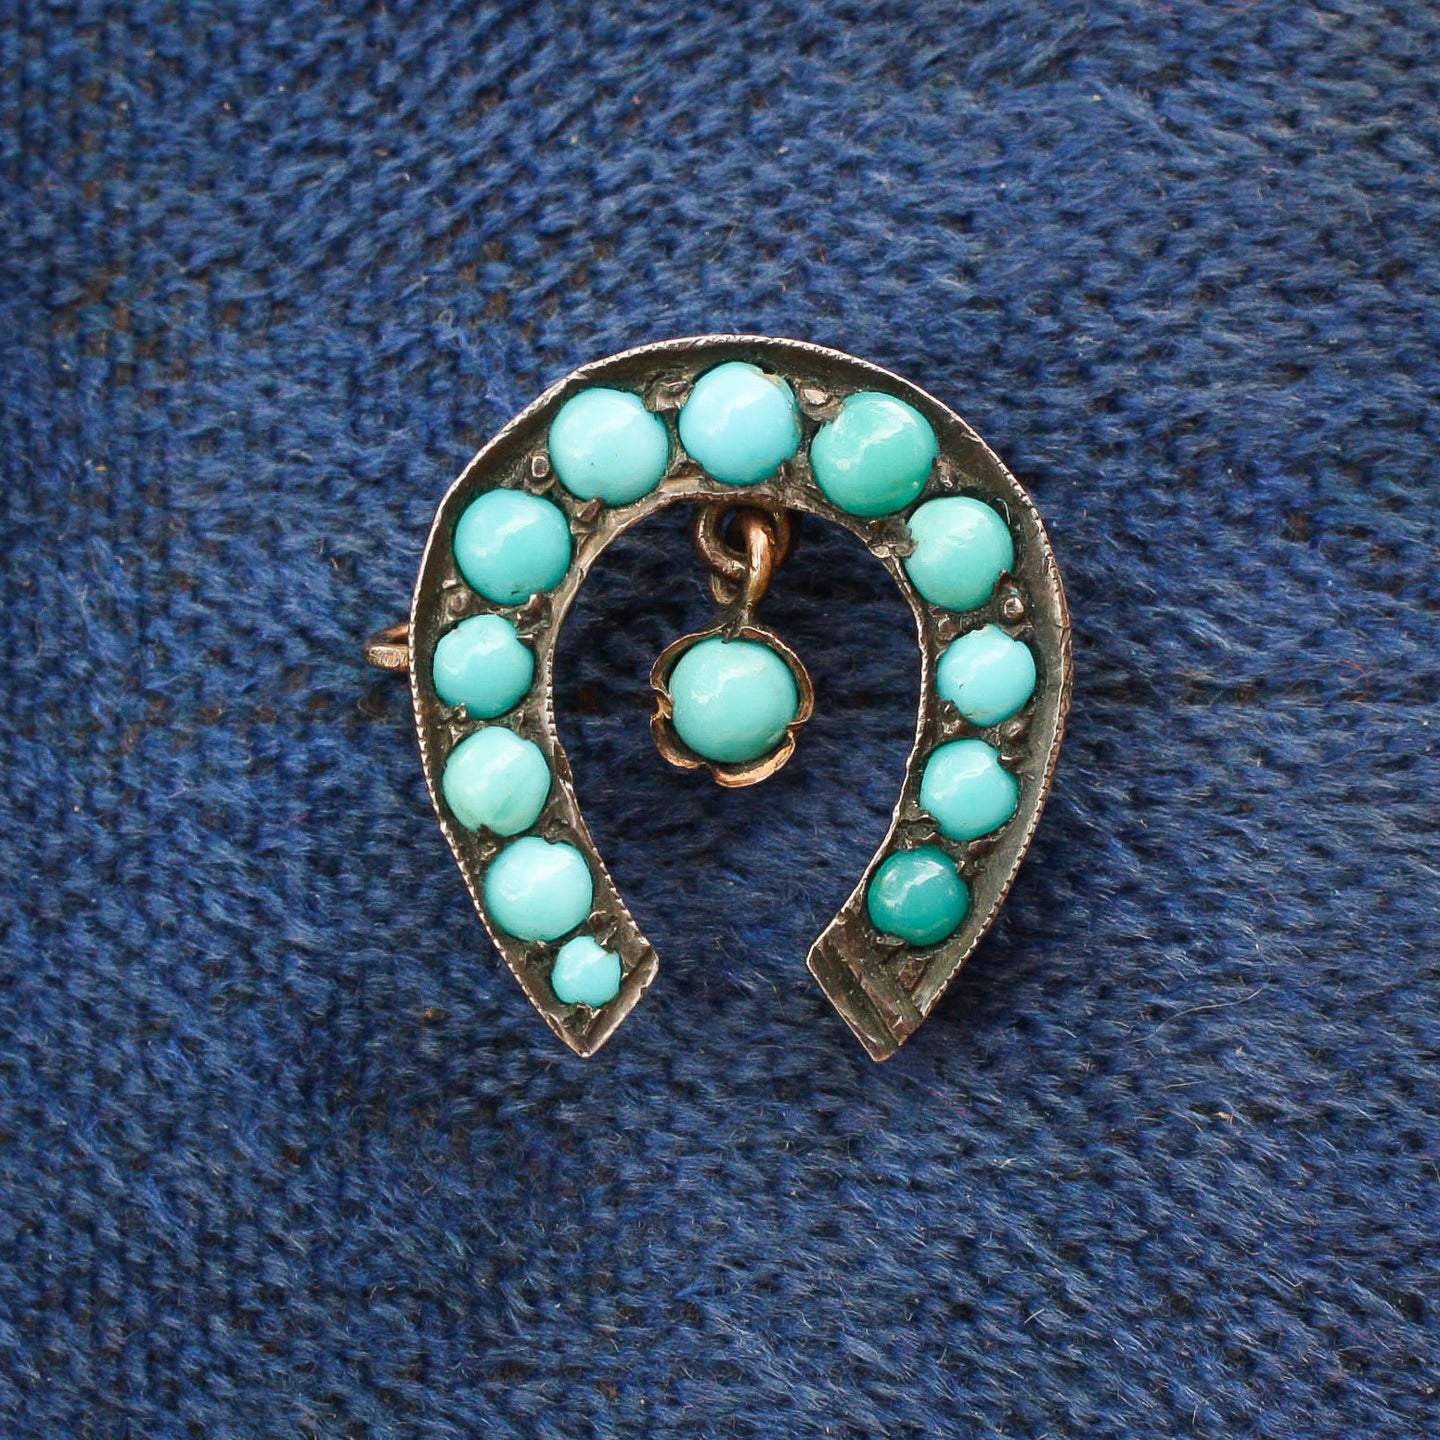 Turquoise Horseshoe Pin c1890